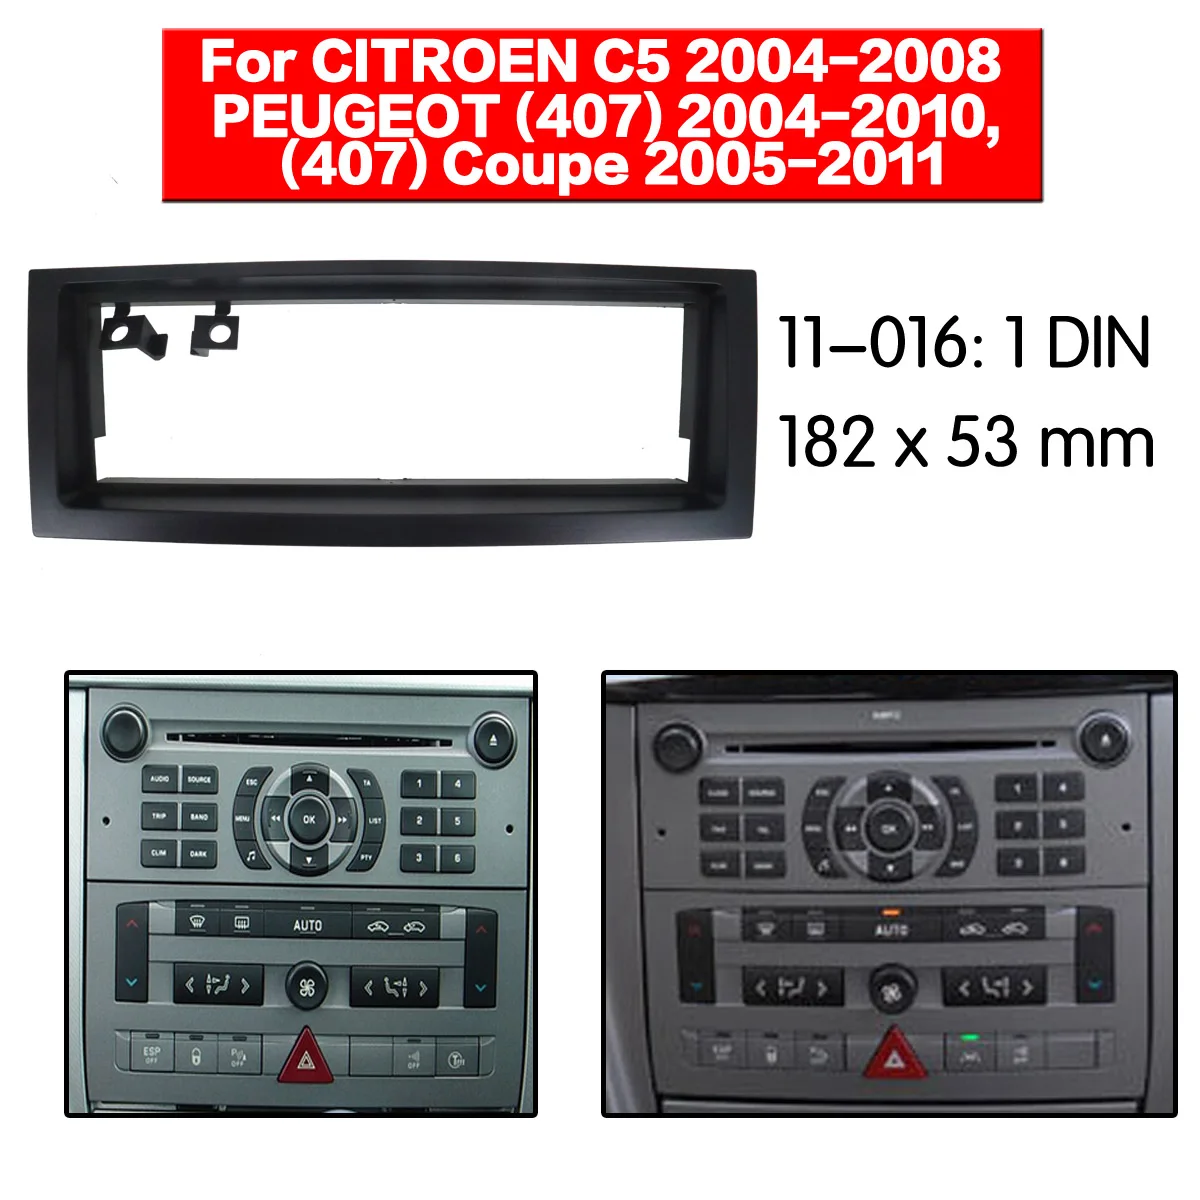 Стерео панель пластина автомобиля радио фасции объемного для CITROEN C5 2004-2008 PEUGEOT 407 Coupe DVD переоборудование рамка